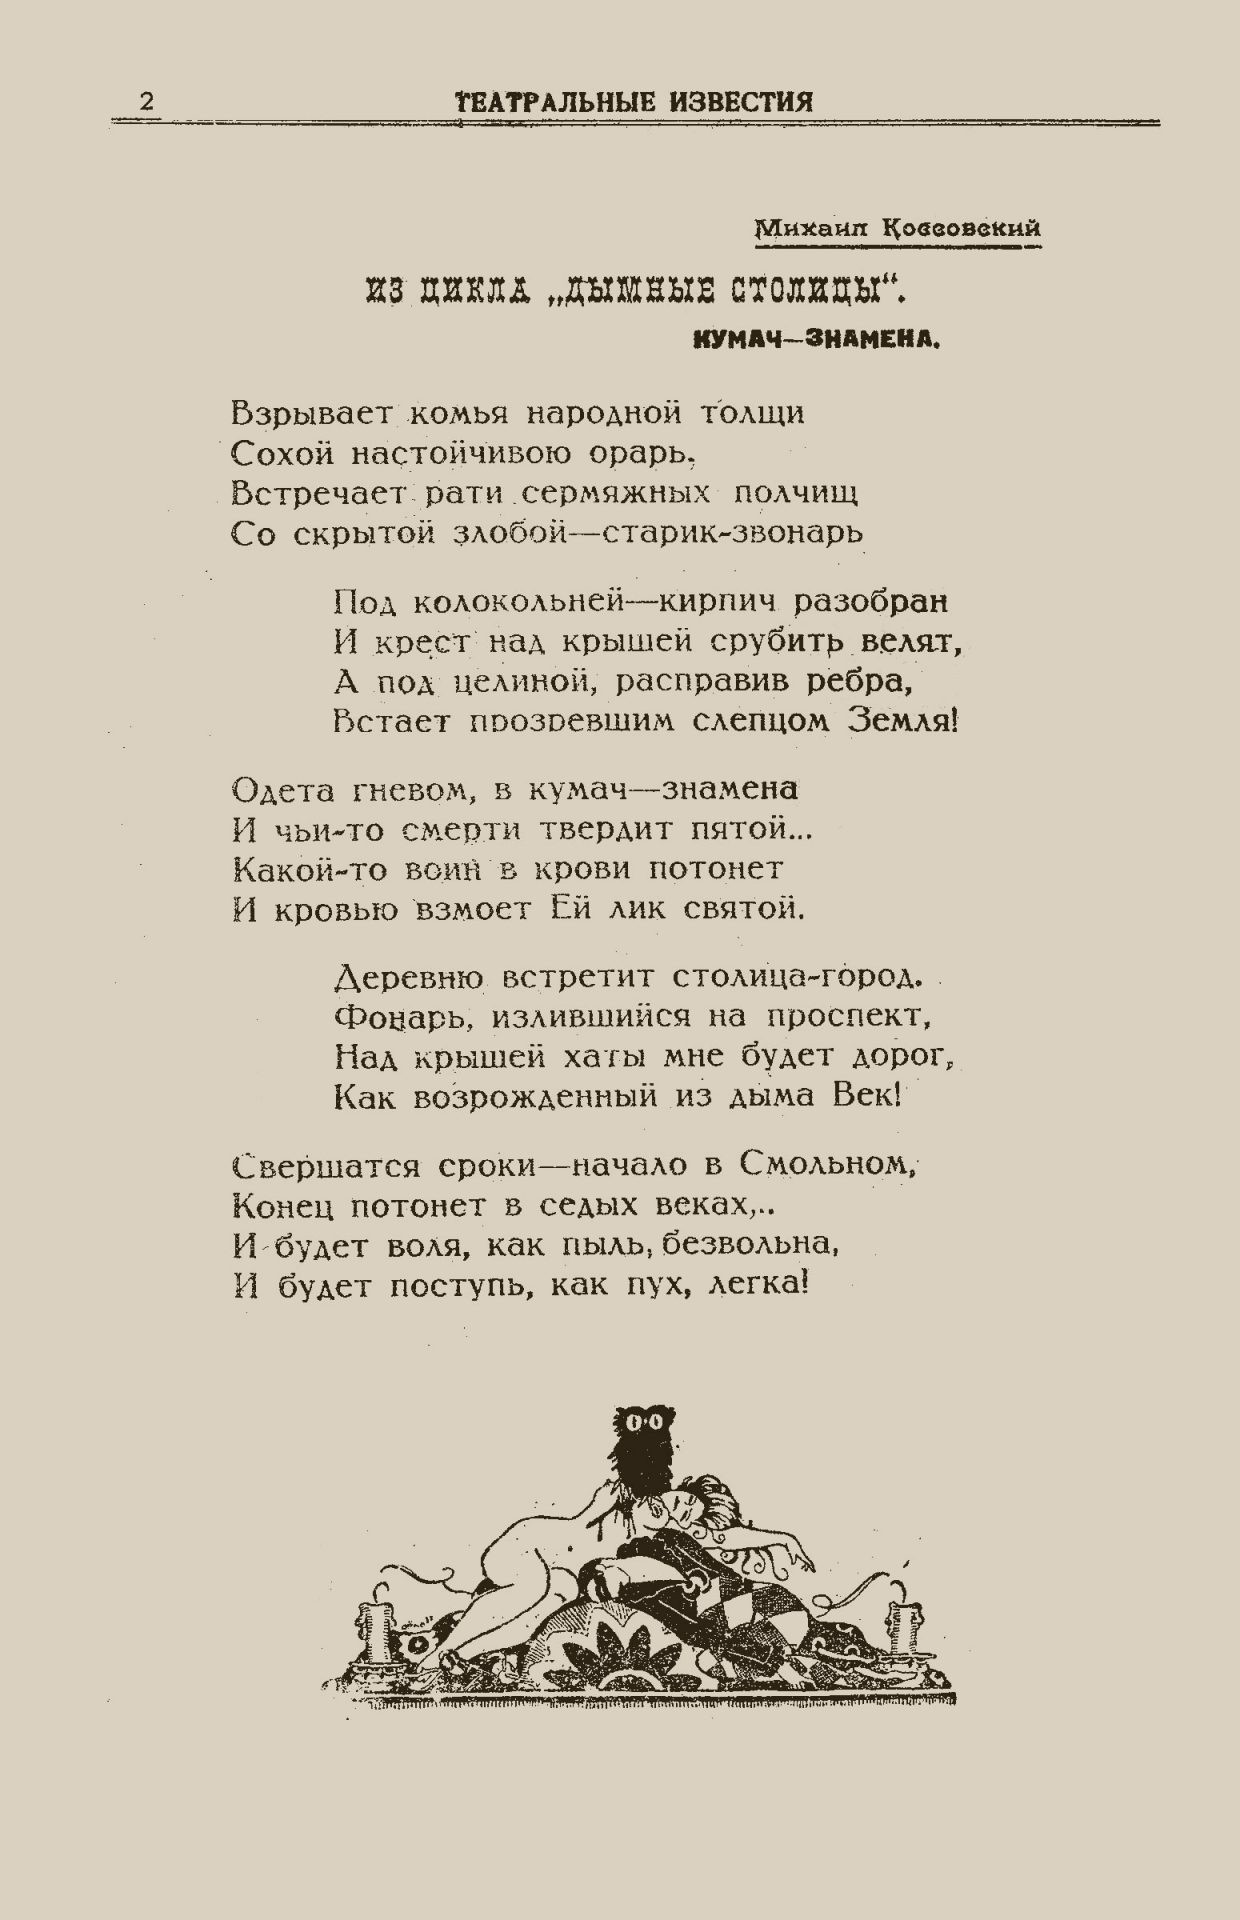 Театральные известия, 1920, №2